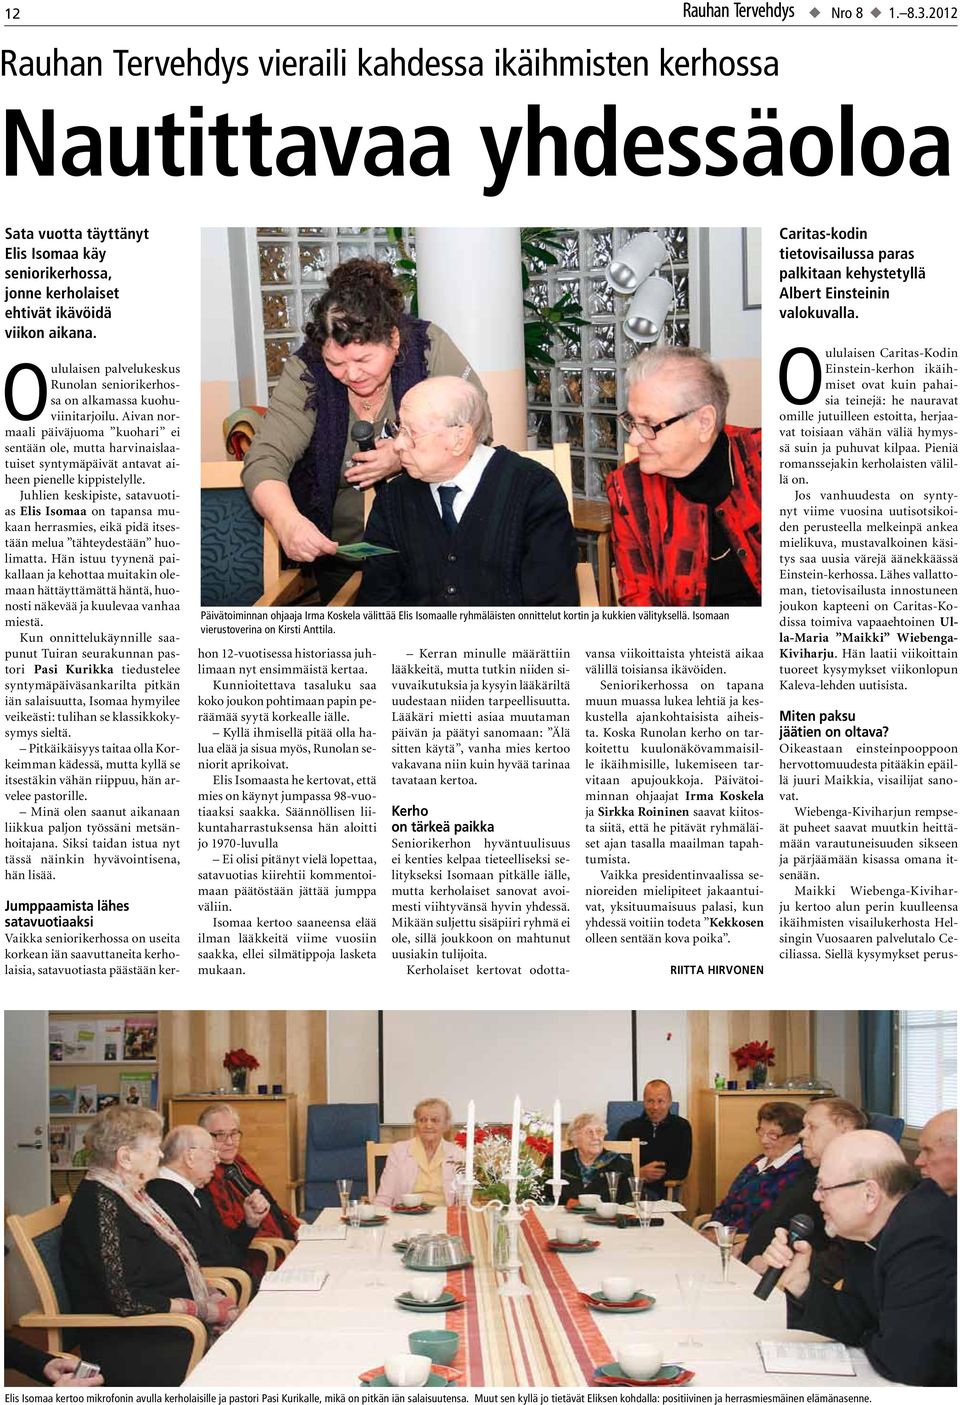 Oululaisen palvelukeskus Runolan seniorikerhossa on alkamassa kuohuviinitarjoilu.